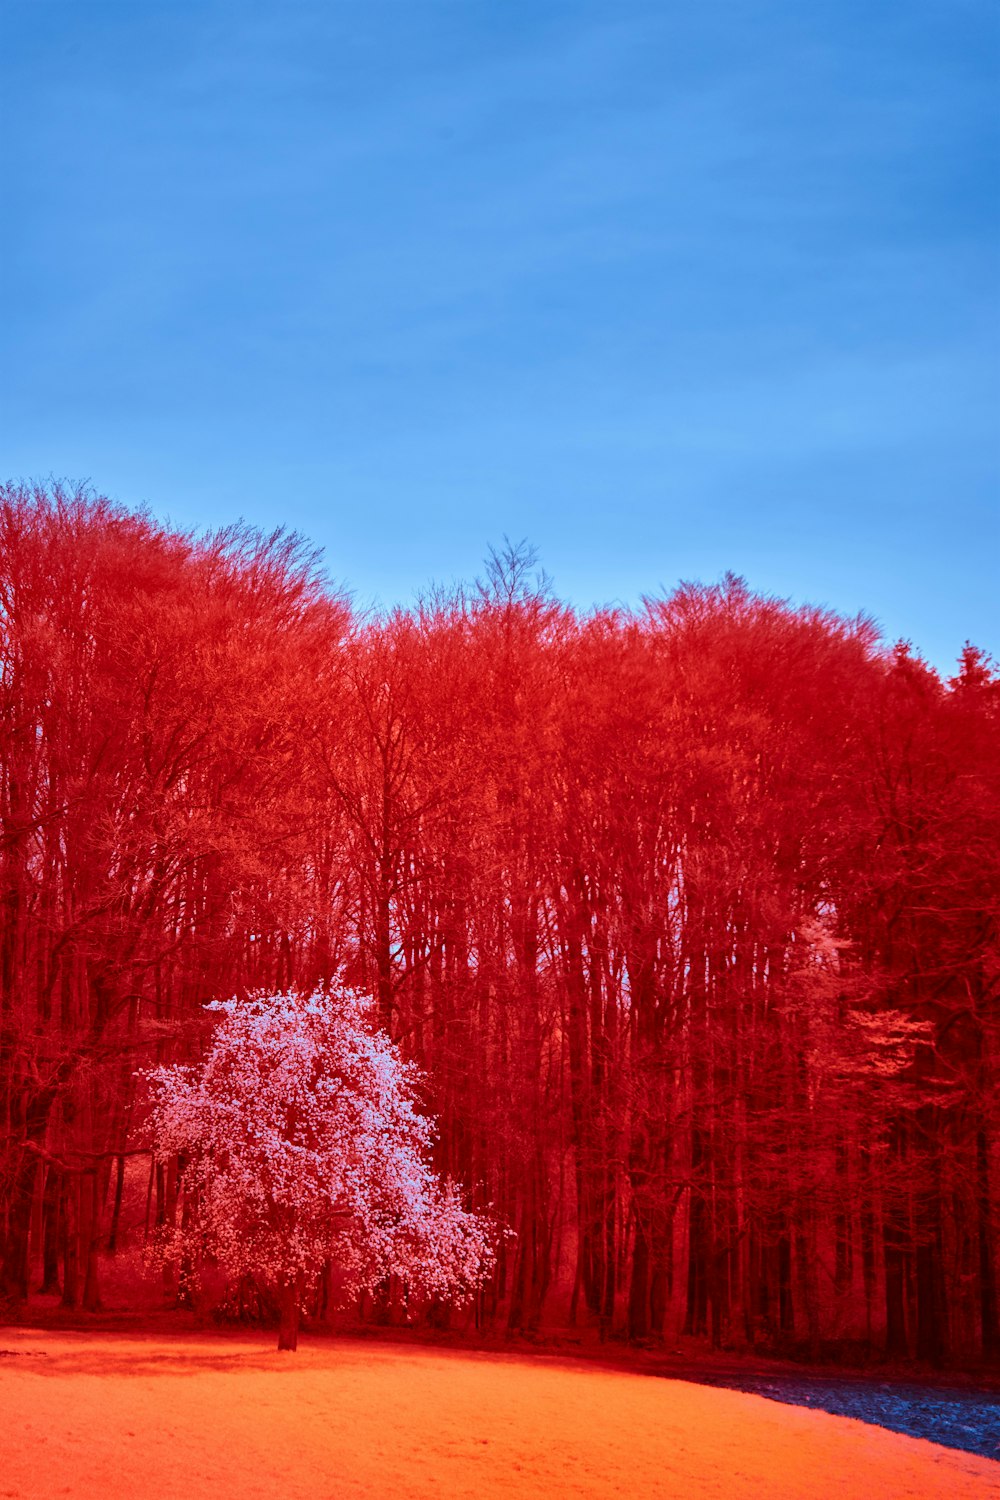 Un grupo de árboles con hojas rojas